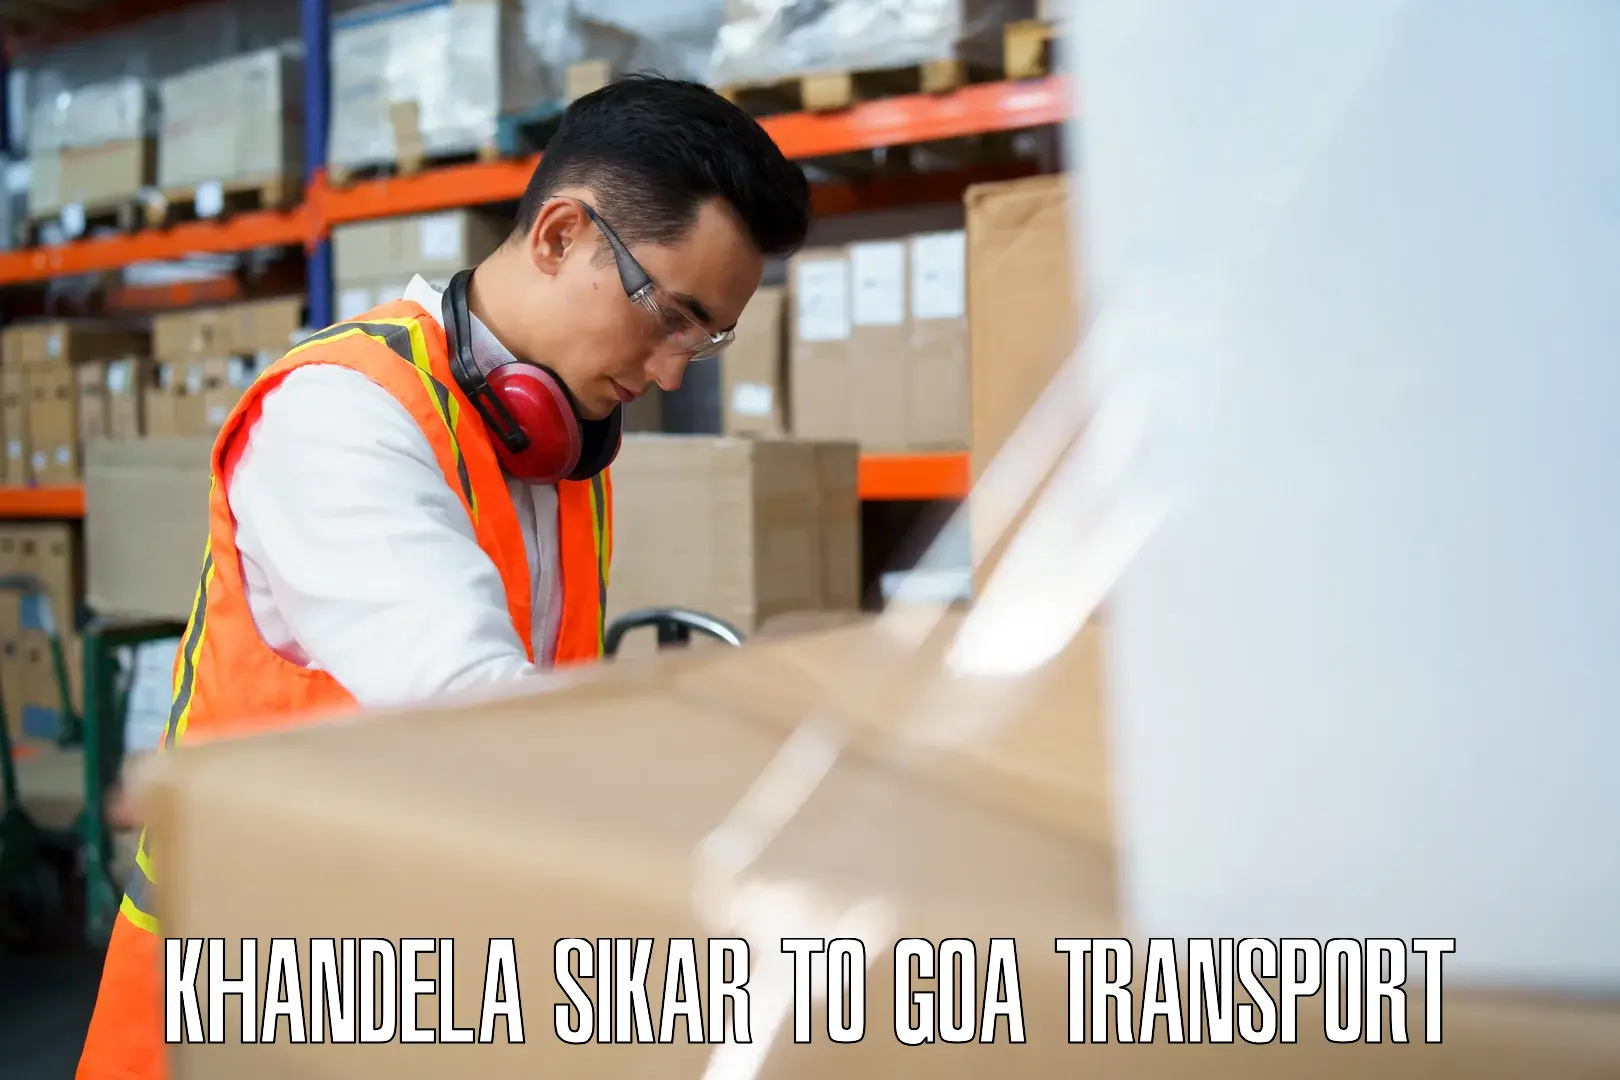 Transport in sharing Khandela Sikar to IIT Goa